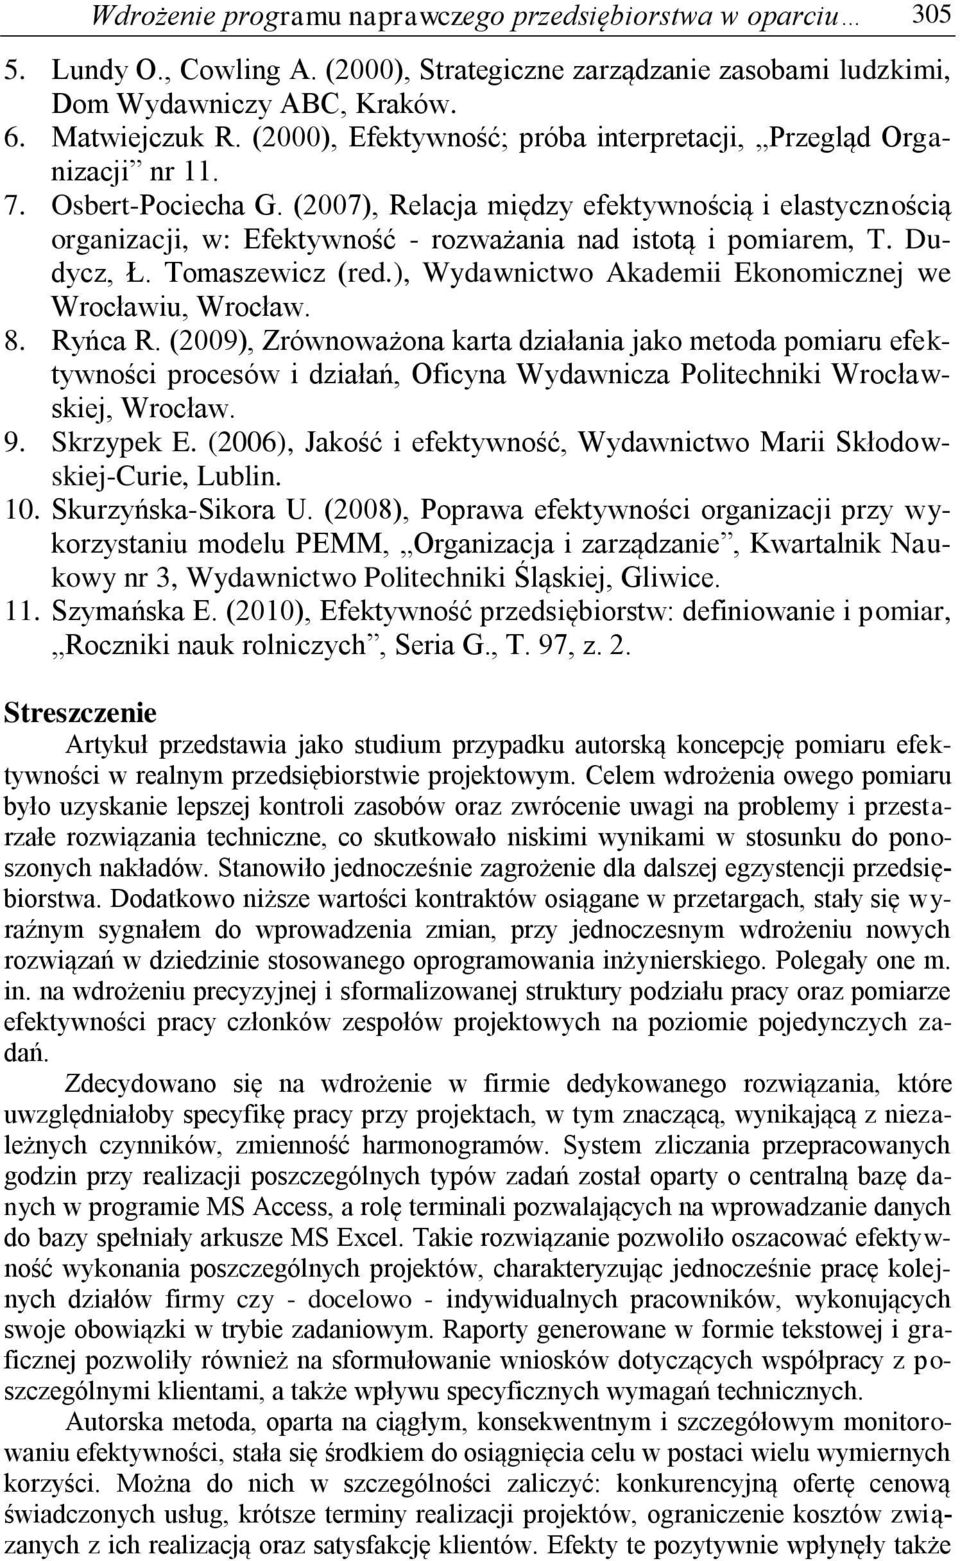 (2007), Relacja między efektywnością i elastycznością organizacji, w: Efektywność - rozważania nad istotą i pomiarem, T. Dudycz, Ł. Tomaszewicz (red.